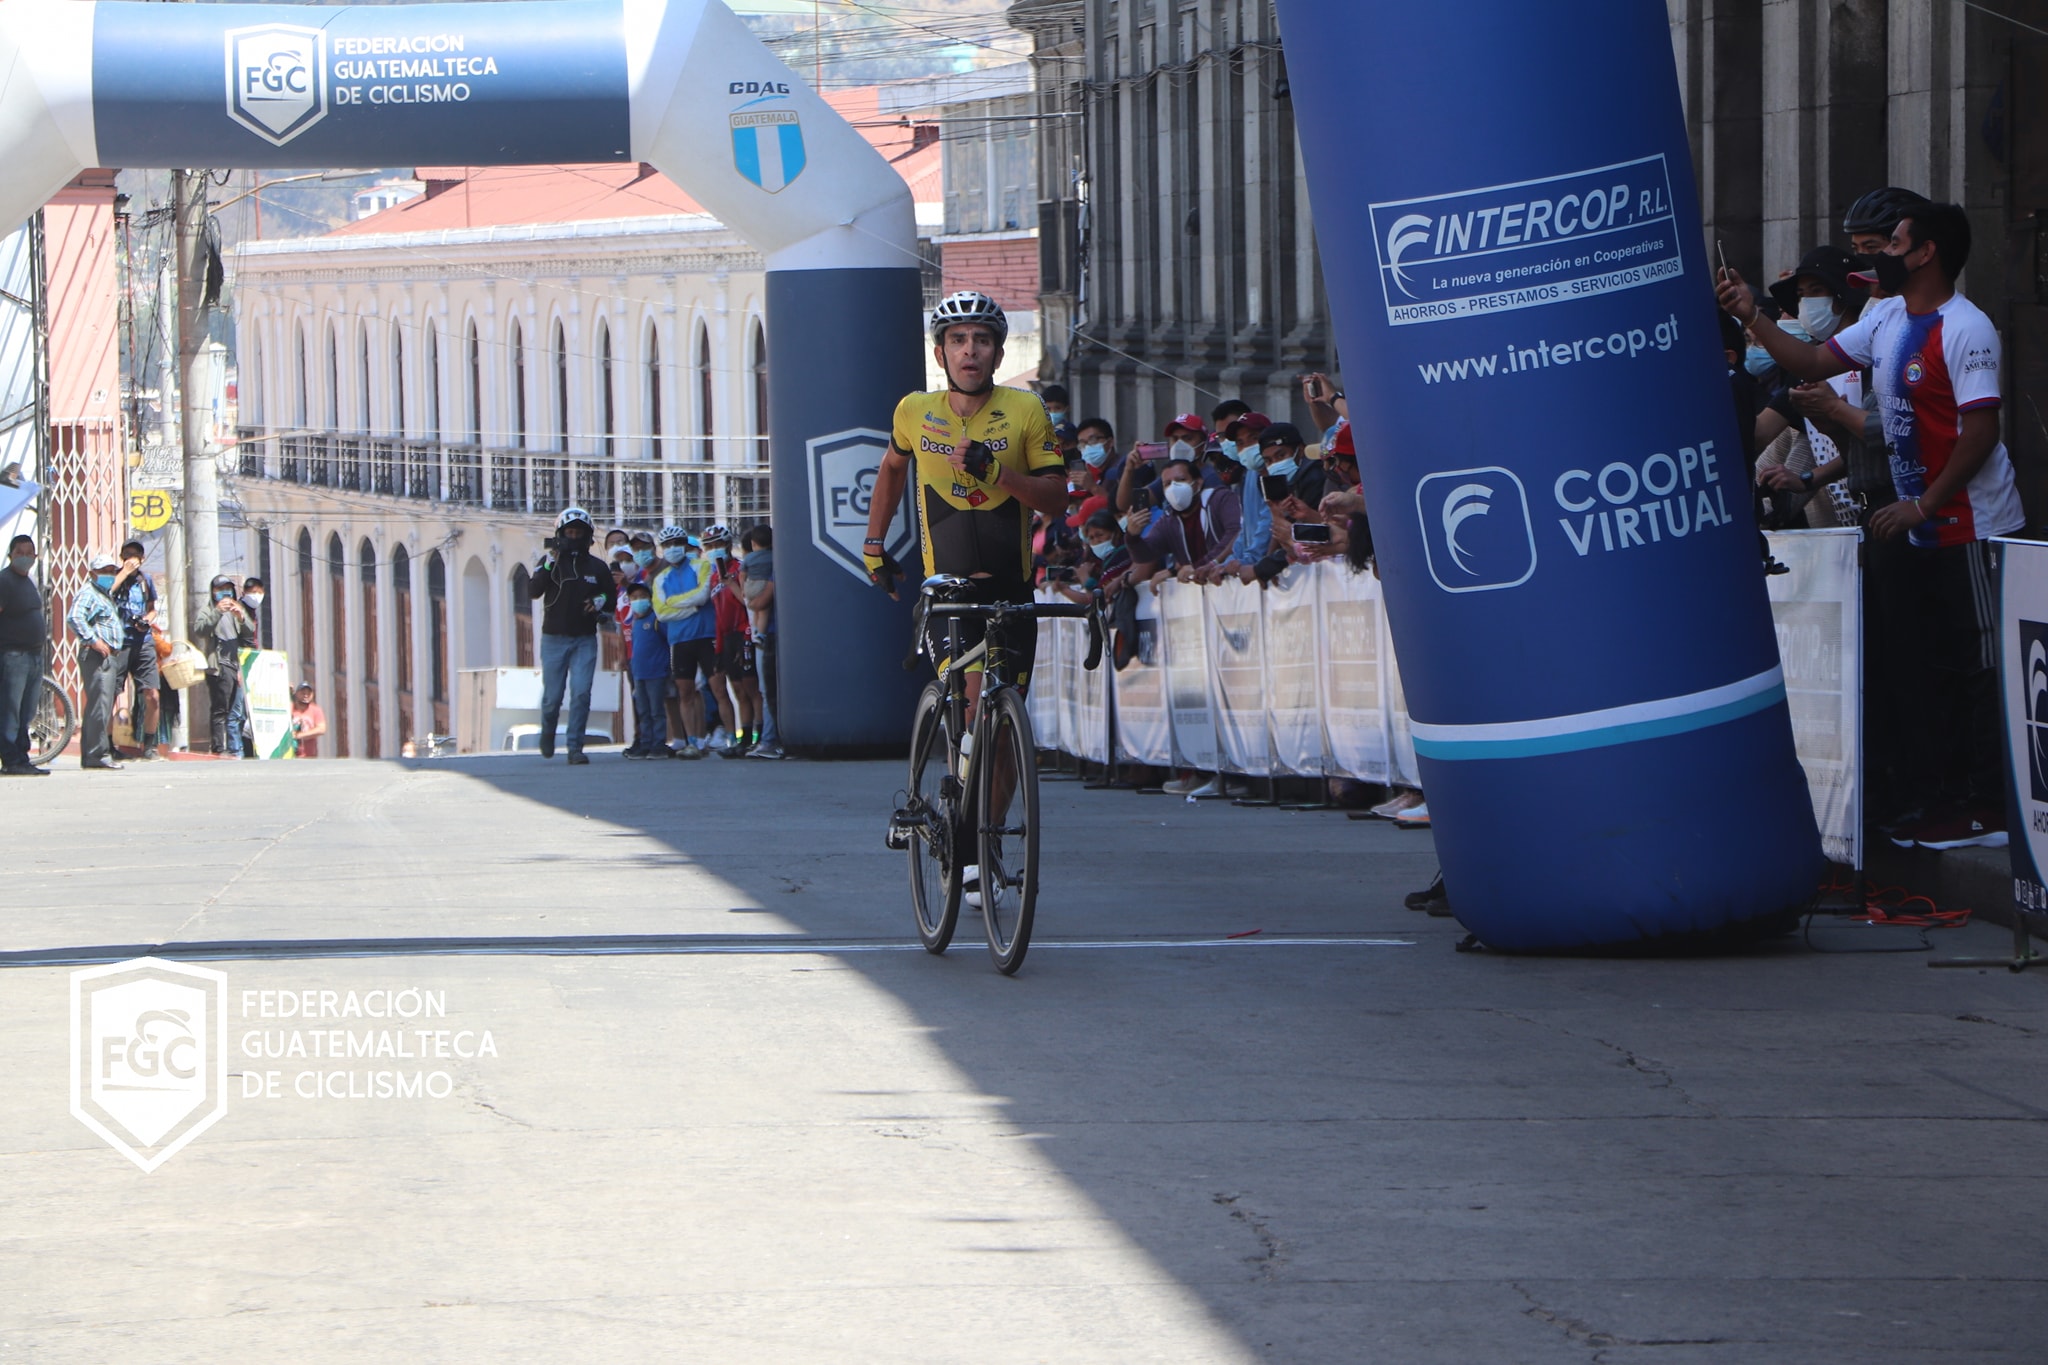 Manuel Rodas ingresó a la meta en Quetzaltenango en el segundo lugar empujando su bicicleta. (Foto Federación de Ciclismo).